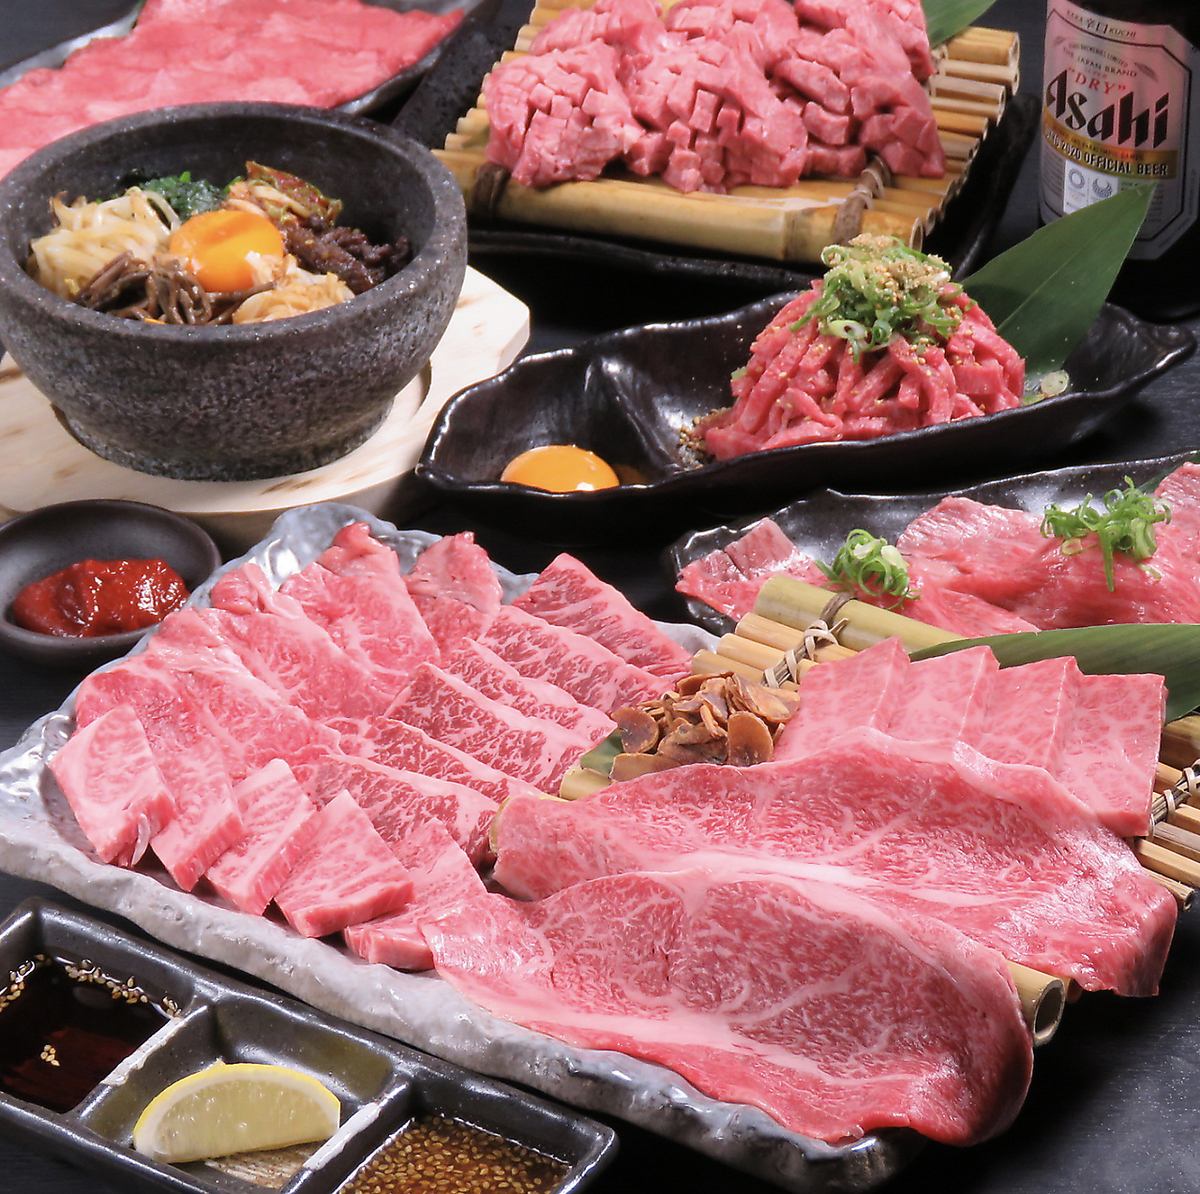 검은 털 일본소와 고급 고기를이 가격으로 먹을 수있는 것이 우왕의 매력!